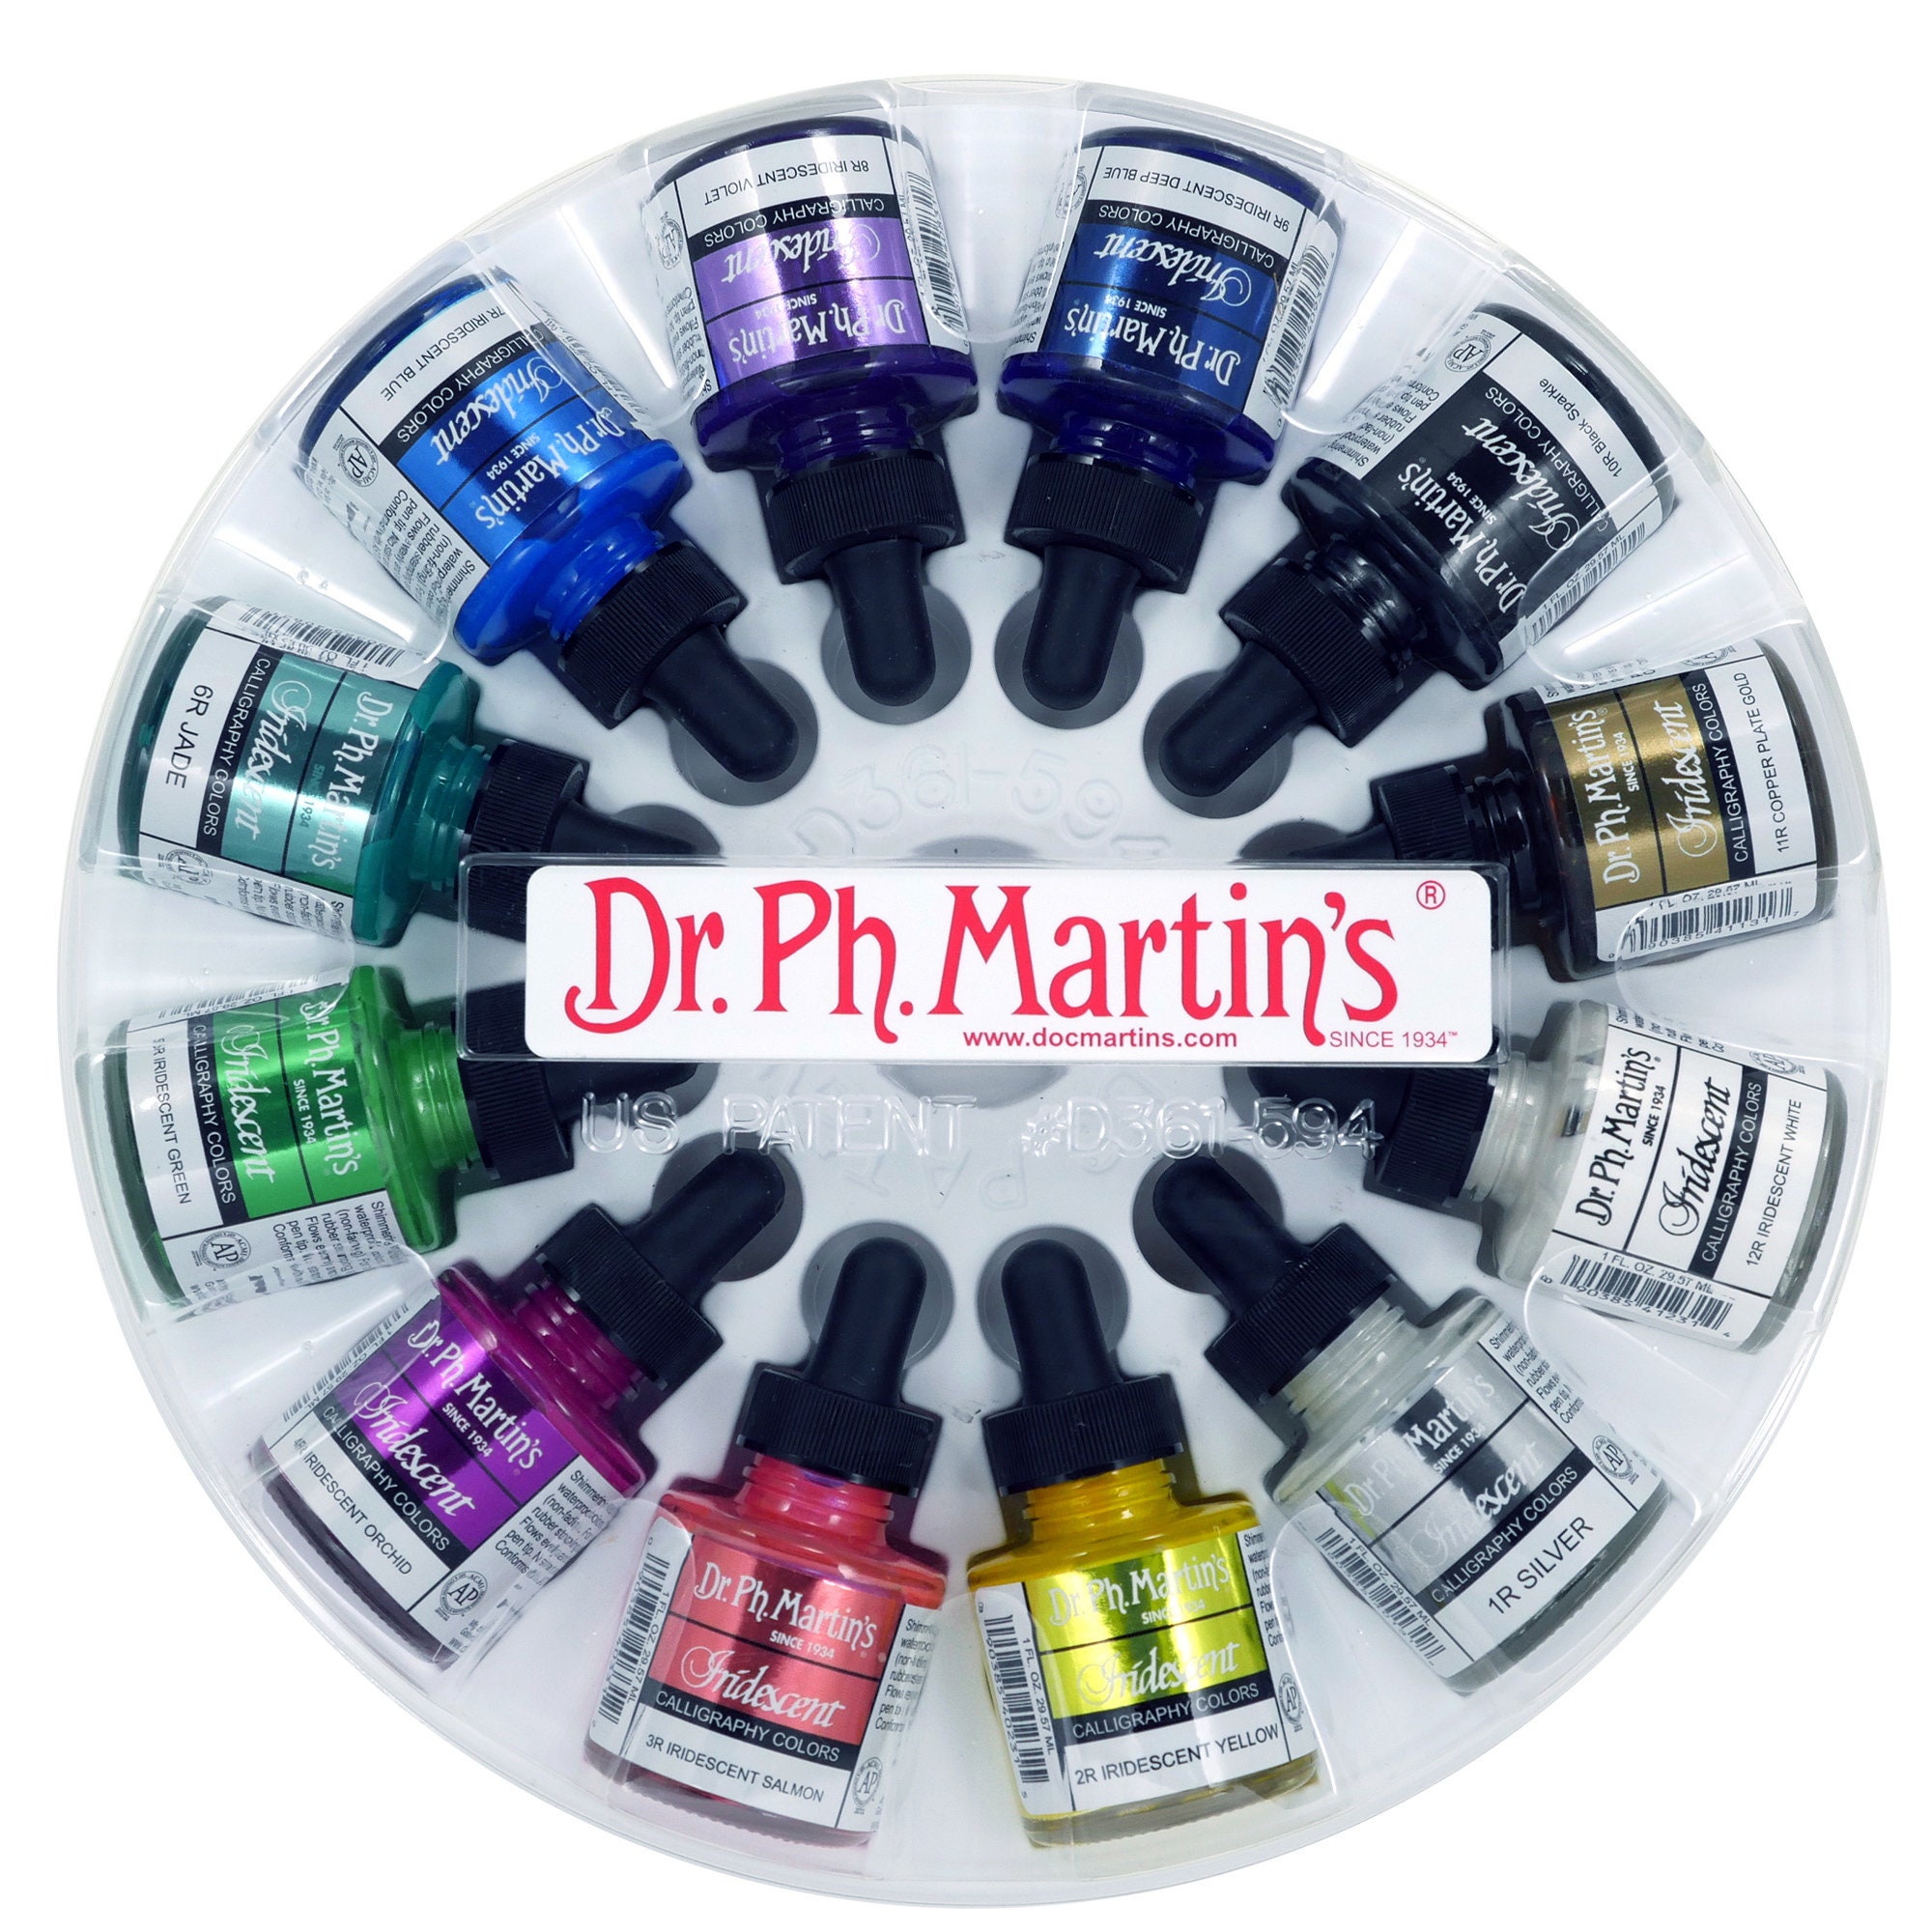 Dr. Ph. Martin's Bleedproof White - 1 oz Bottle